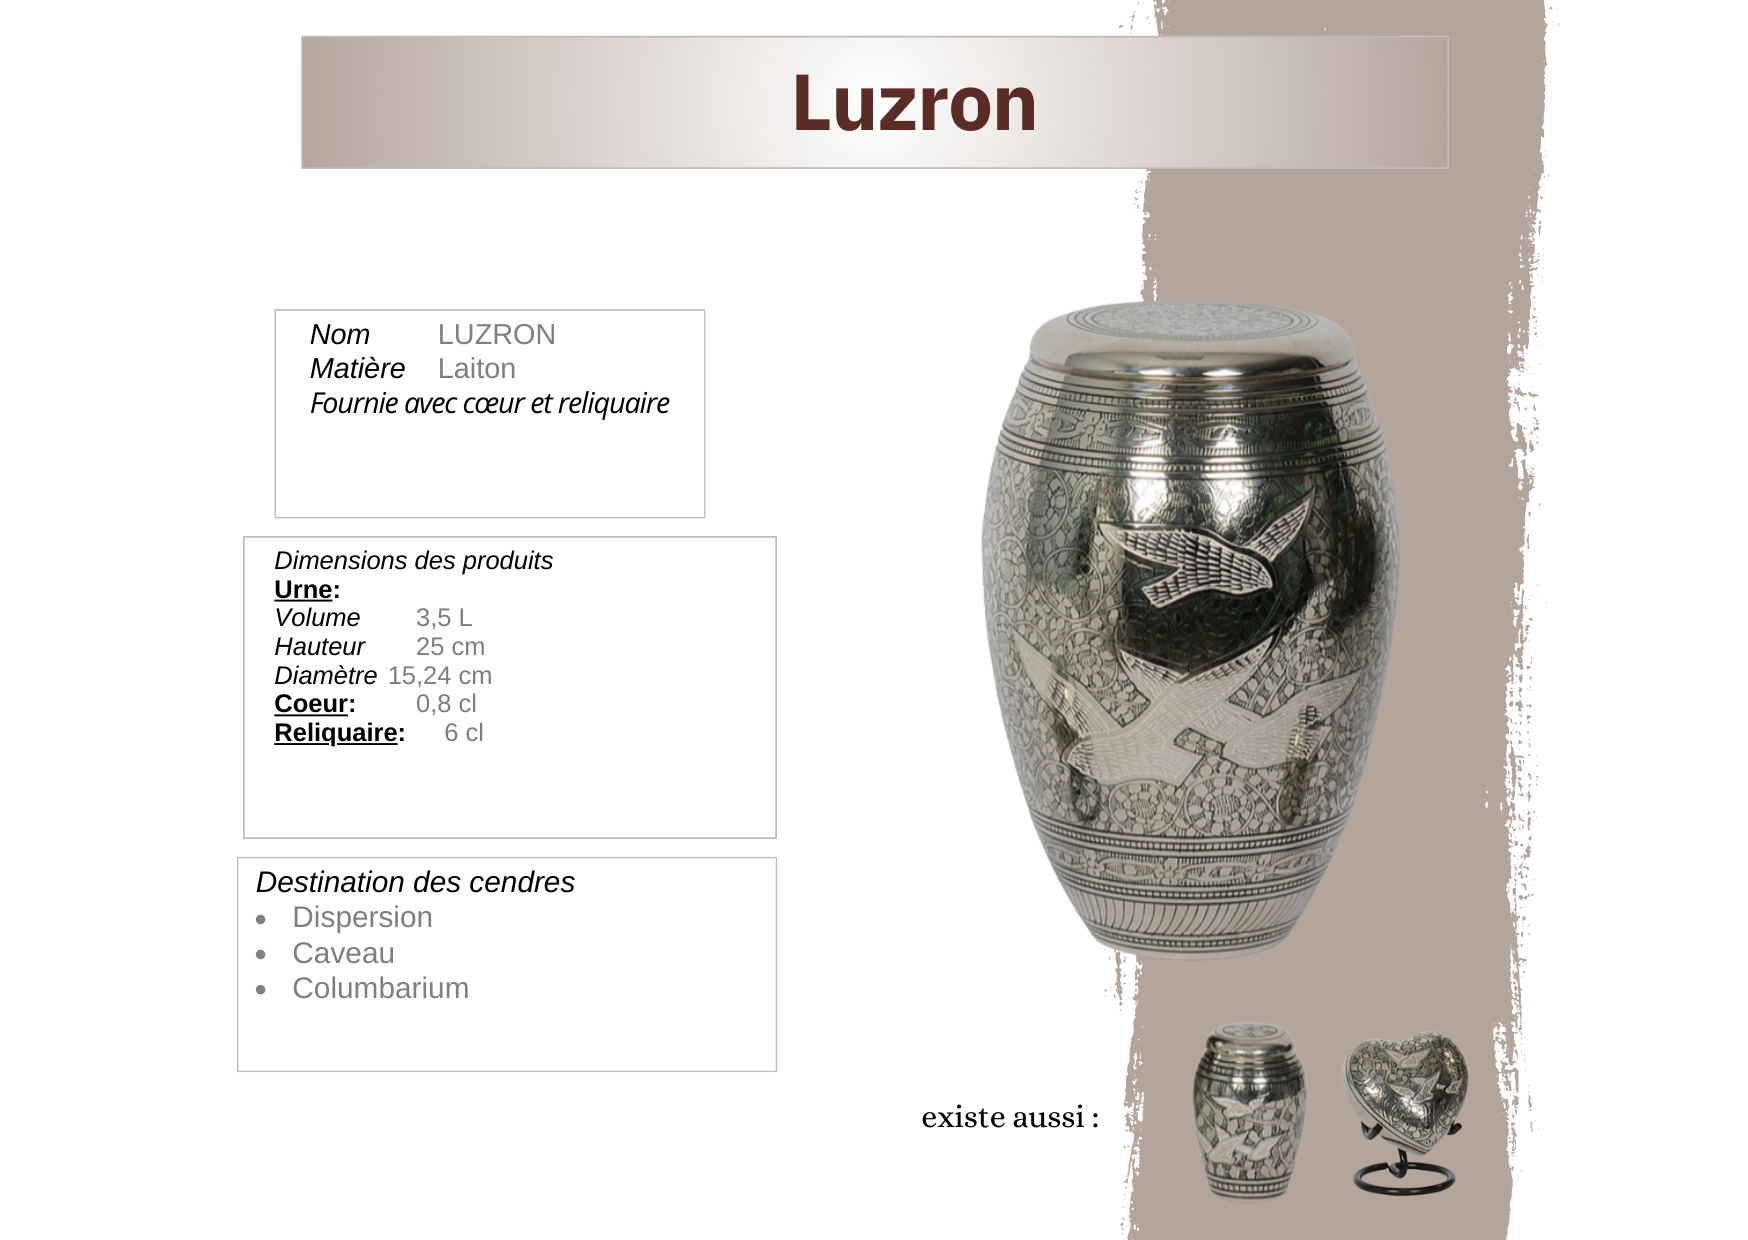 Luzron